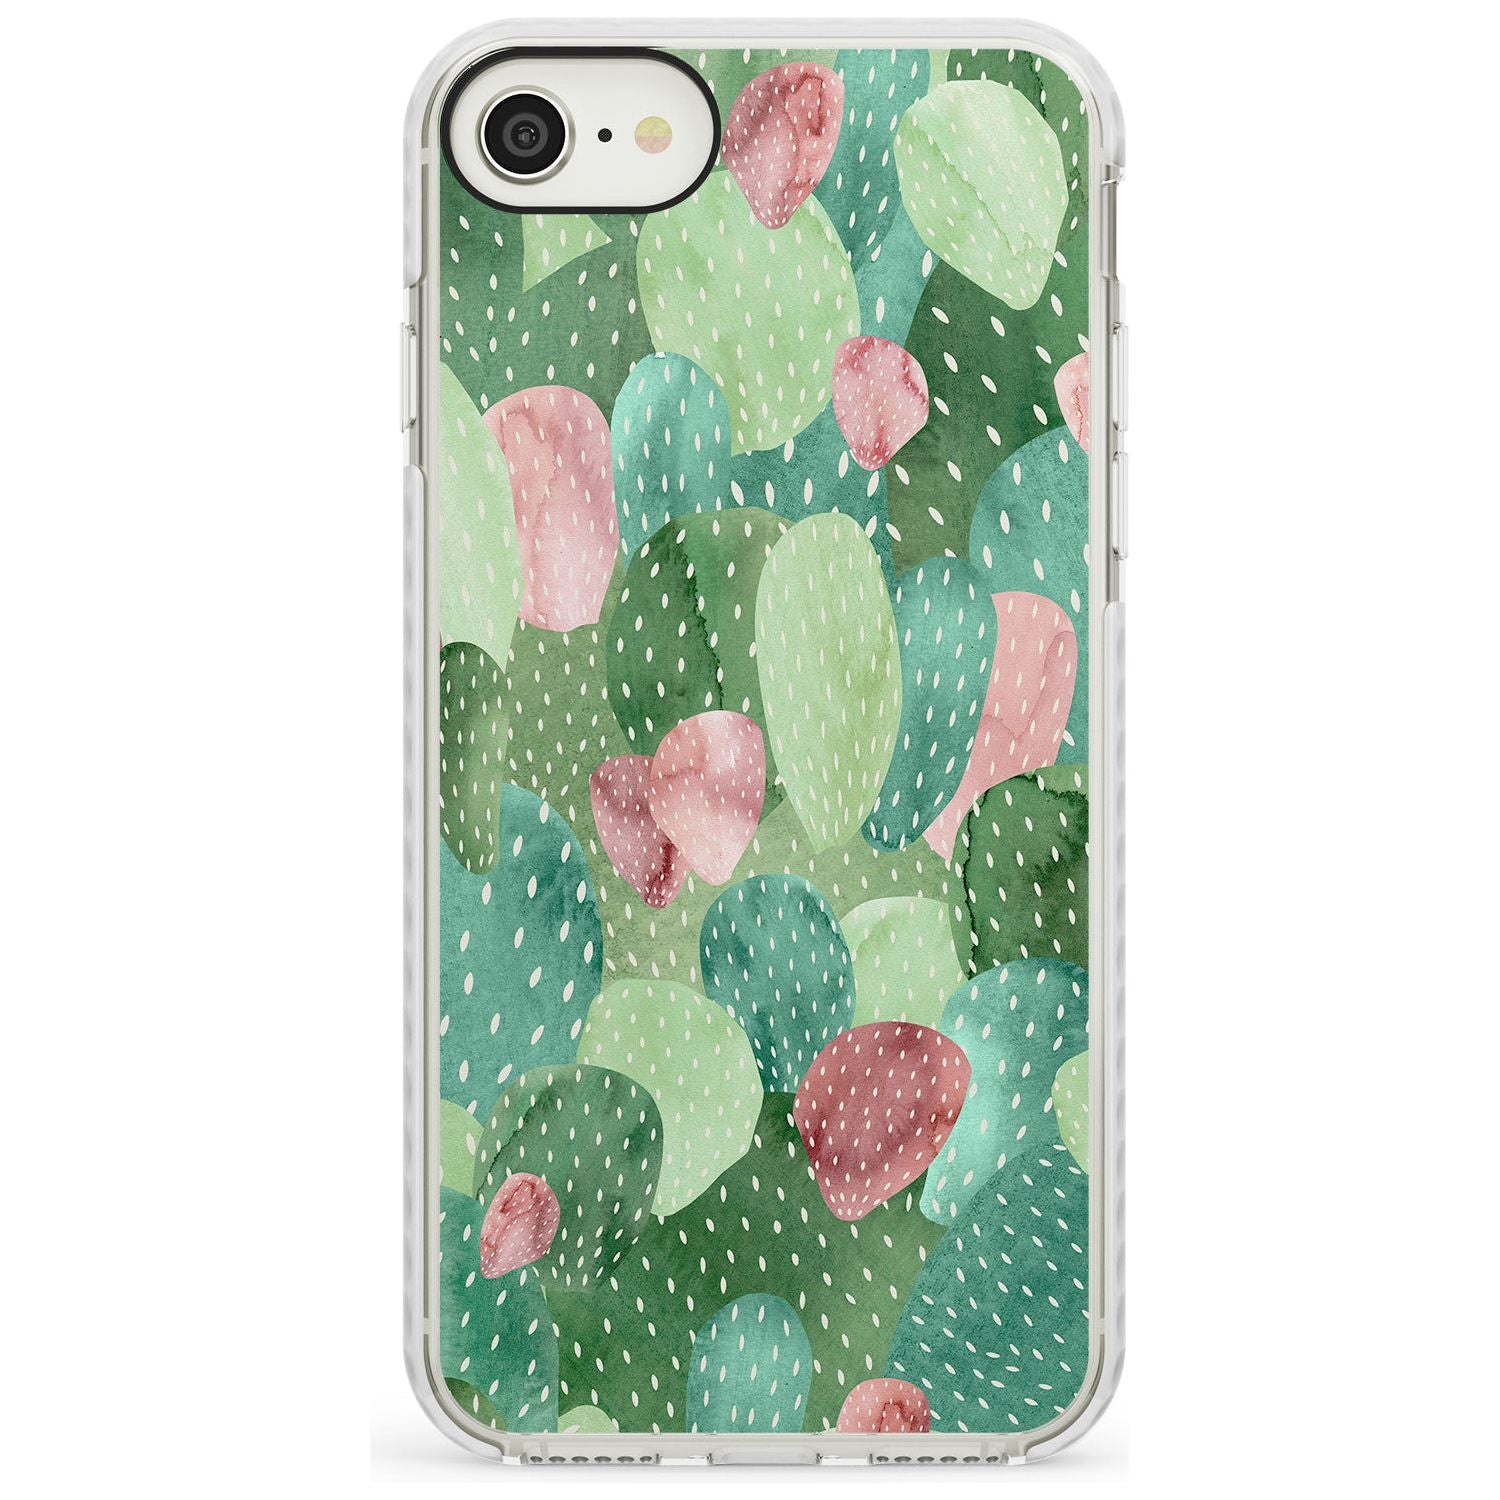 Colourful Cactus Mix Design Impact Phone Case for iPhone SE 8 7 Plus